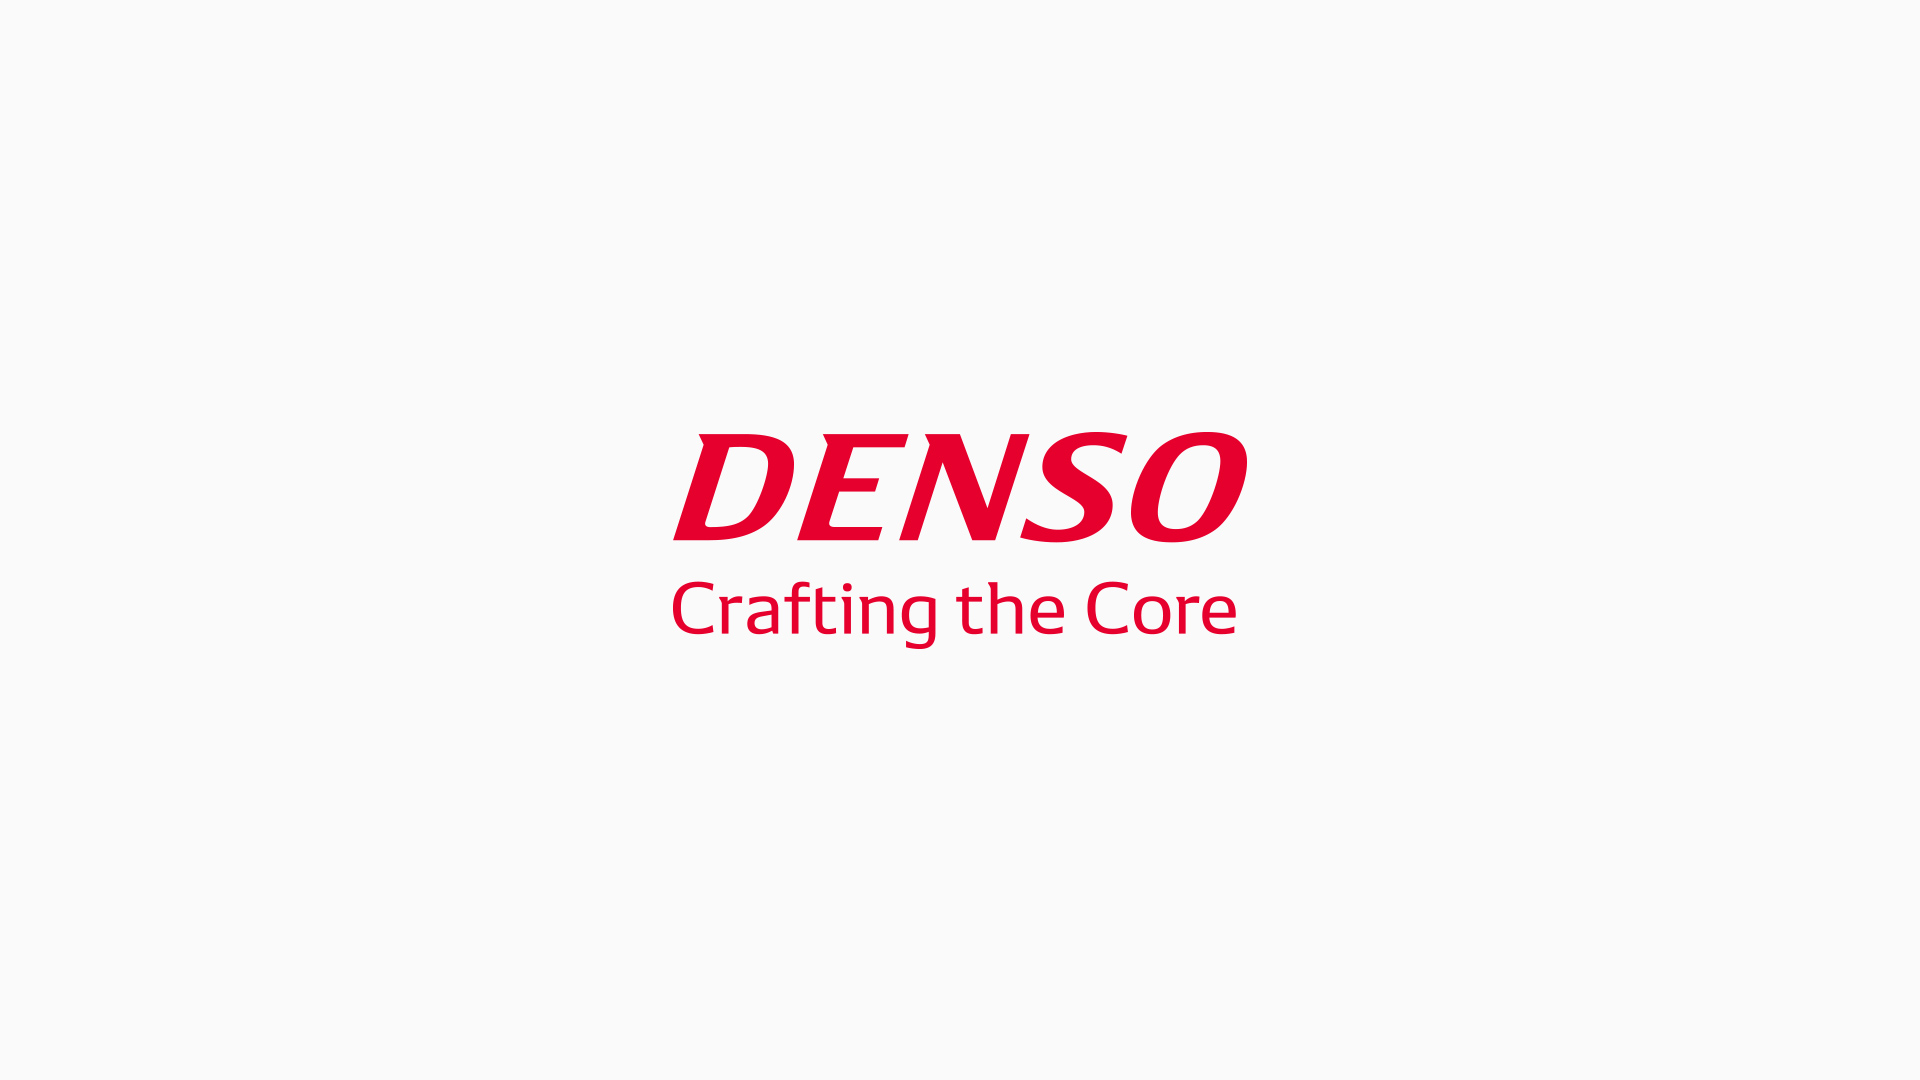 DENSO、組織、経営陣の変更を発表ニュースニュース